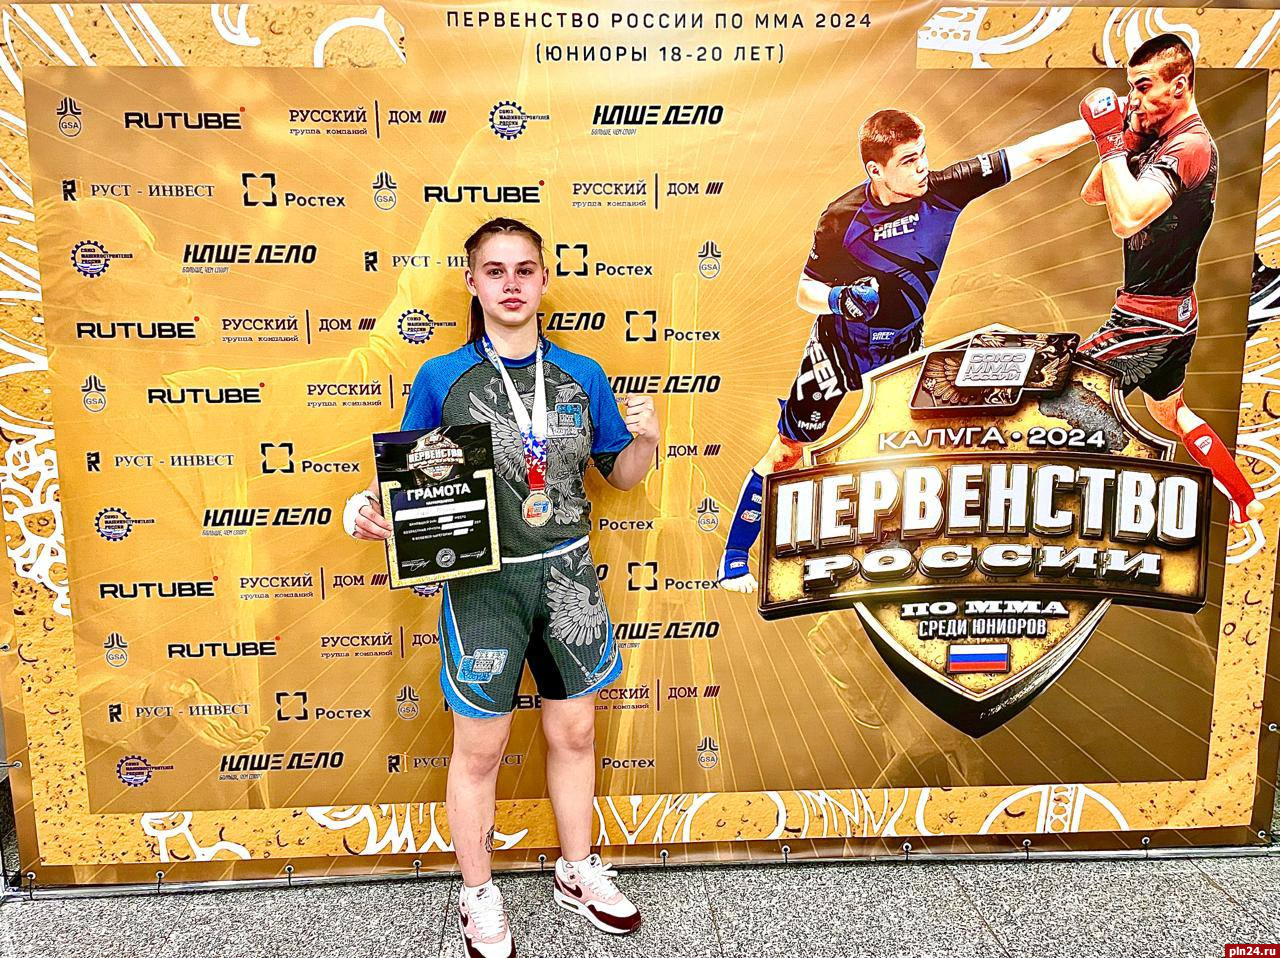 Спортсменка из Псковской области заняла третье место на первенстве России по ММА, несмотря на травму руки